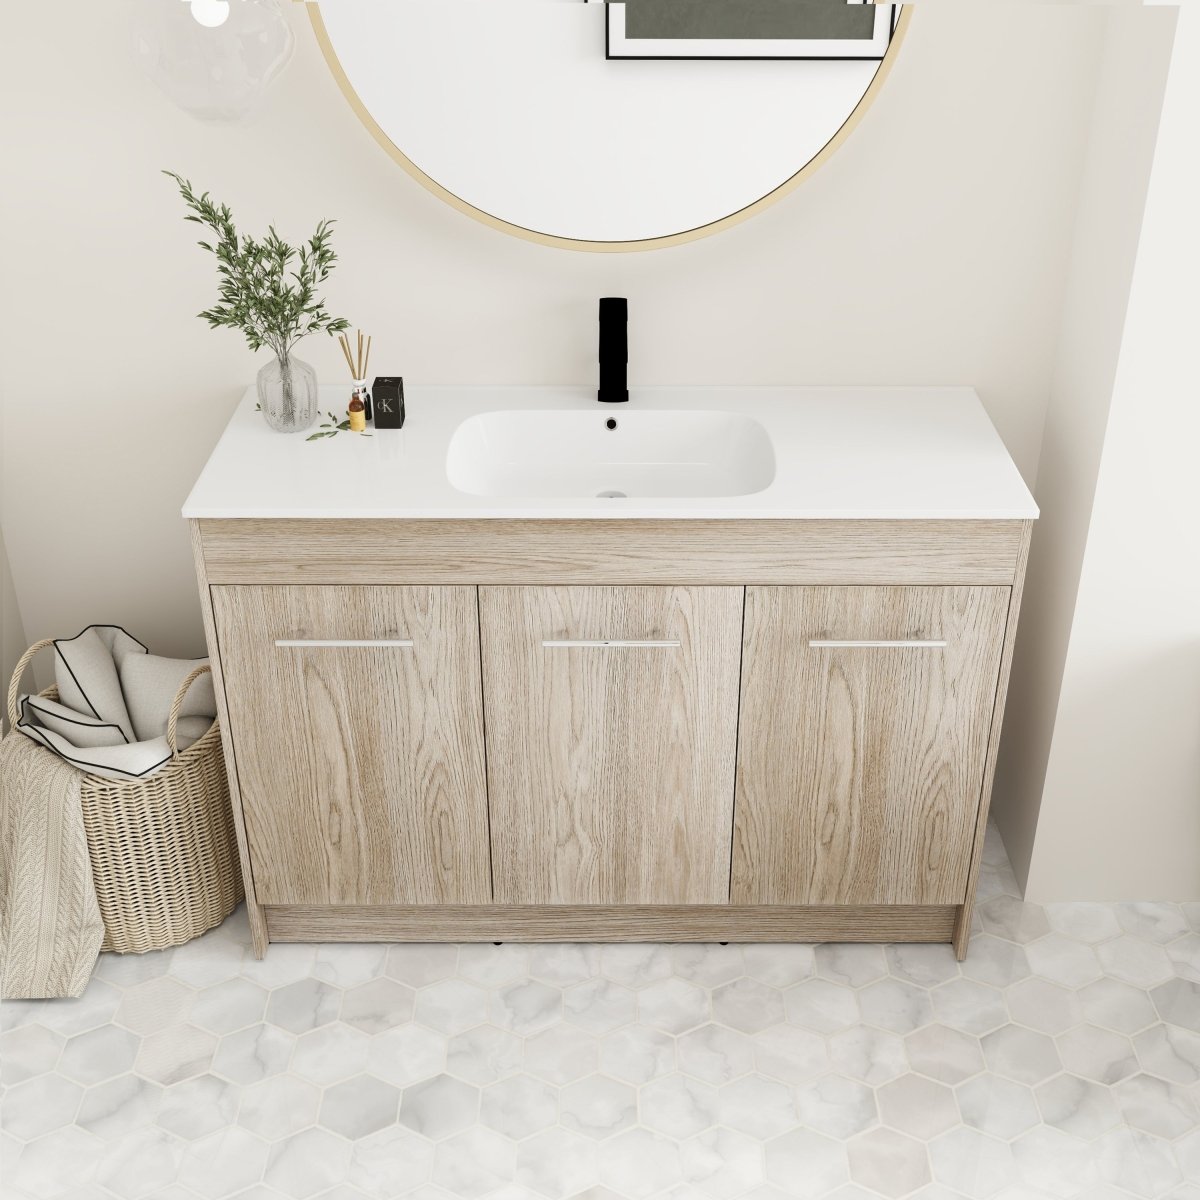 ExBrite 48 Inch Freestanding Bathroom Vanity